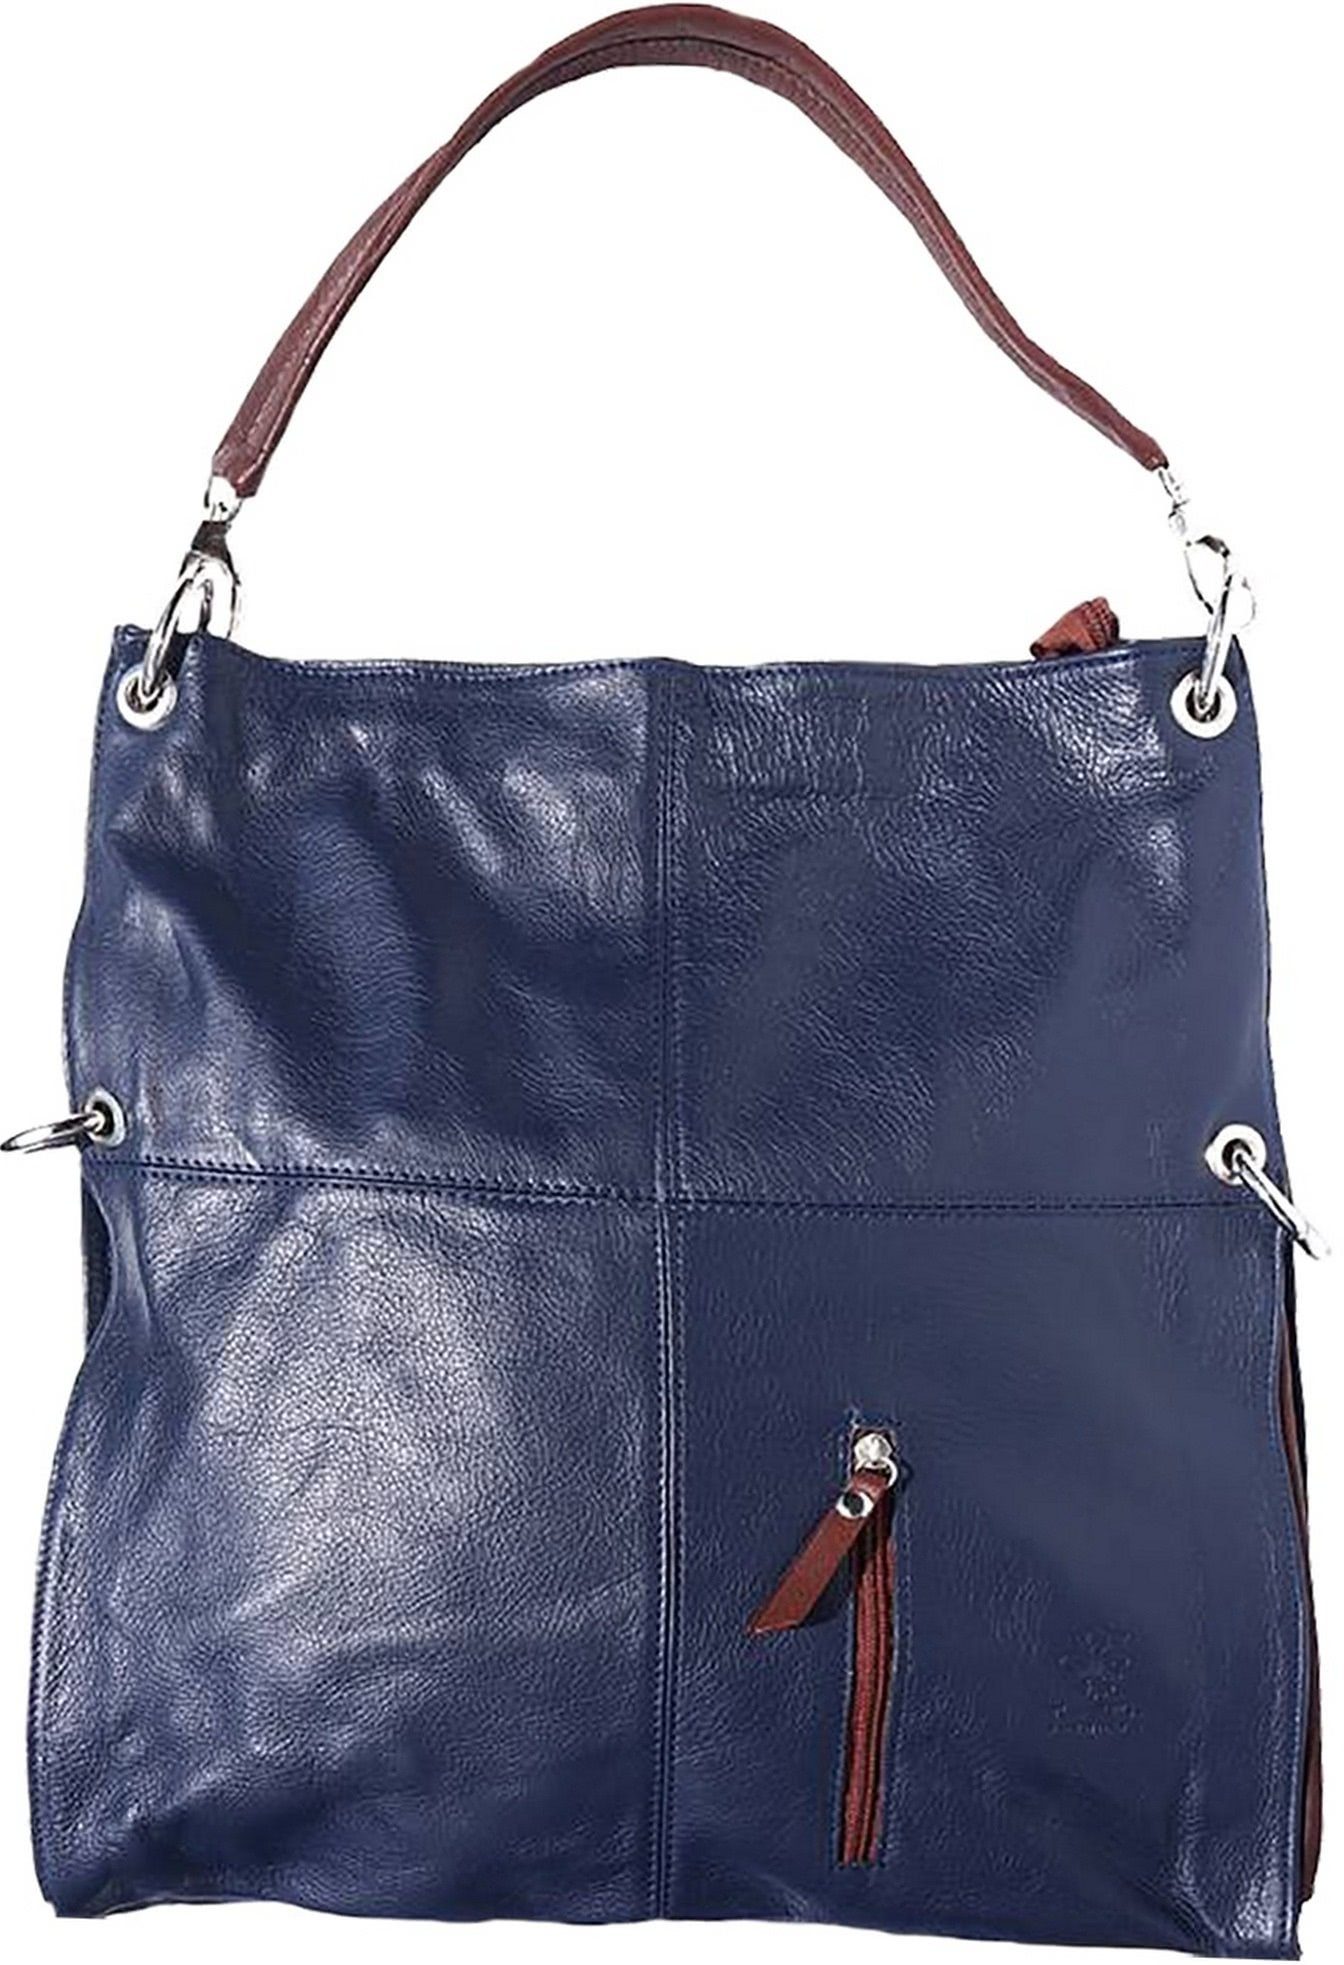 FLORENCE Schultertasche »Florence Hobo Bag Echtleder Handtasche«, Damen  Tasche aus Echtleder in blau, braun, ca. 37cm Breite, Made-In Italy